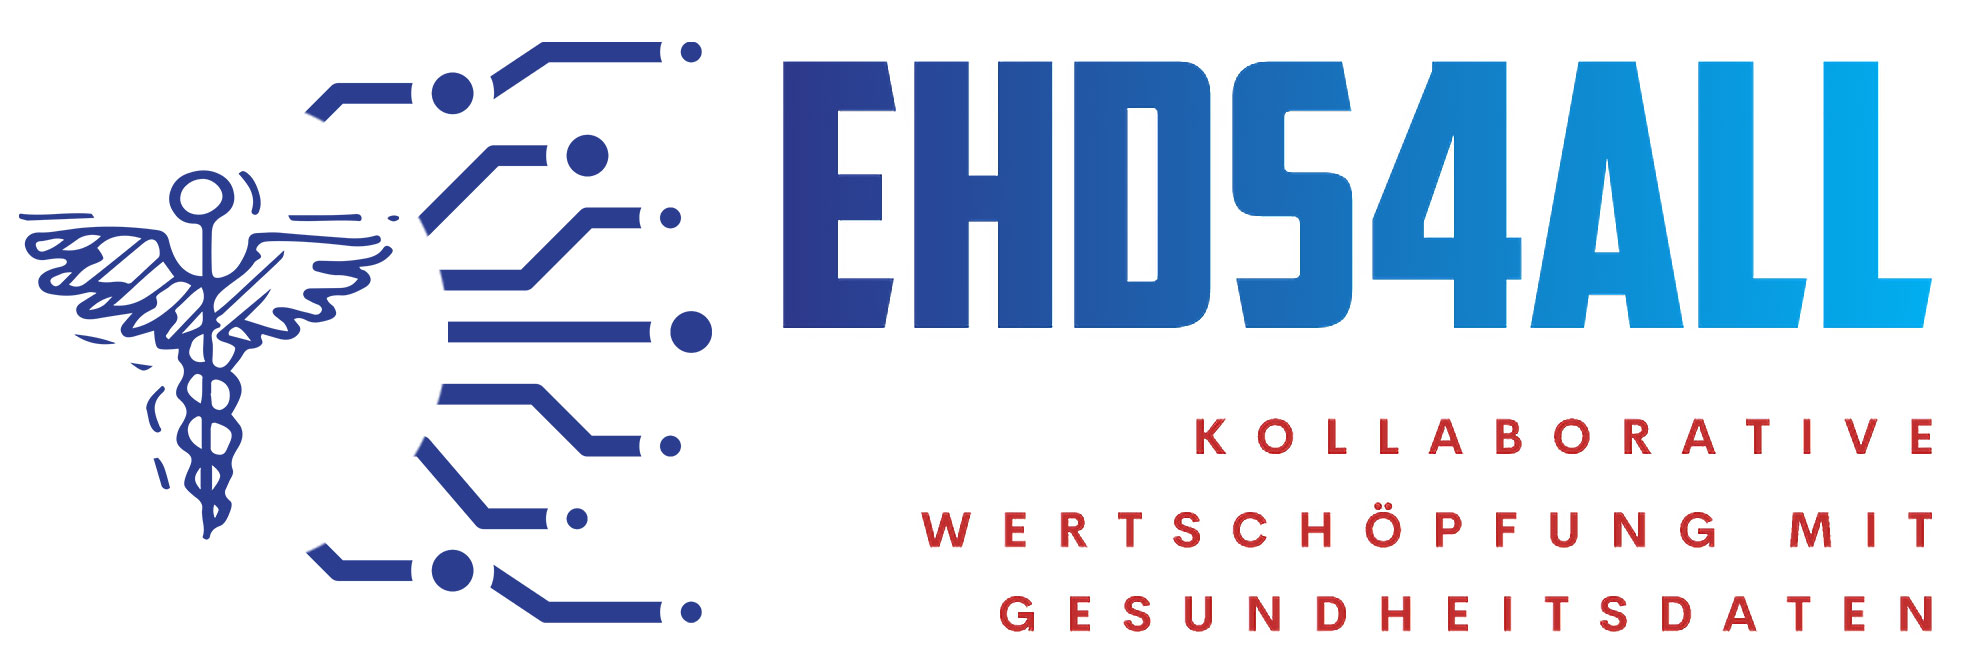 EHDS für Alle: Kollaborative Wertschöpfung mit Gesundheitsdaten (EHDS4ALL)